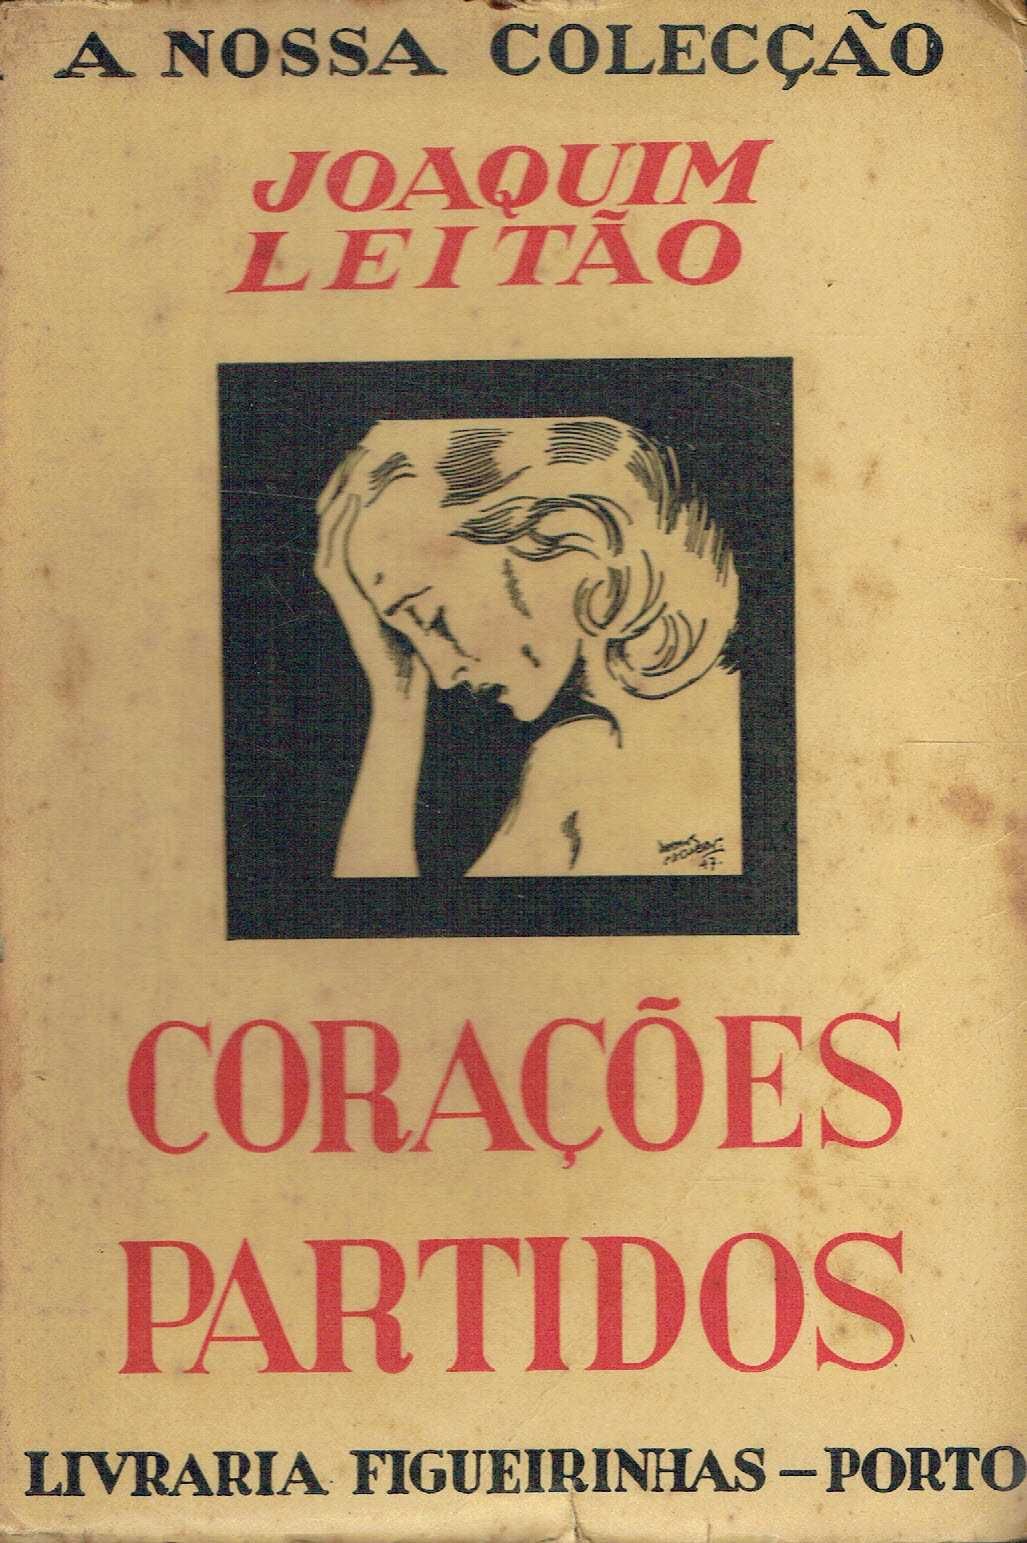 694

Corações Partidos
de Joaquim Leitão